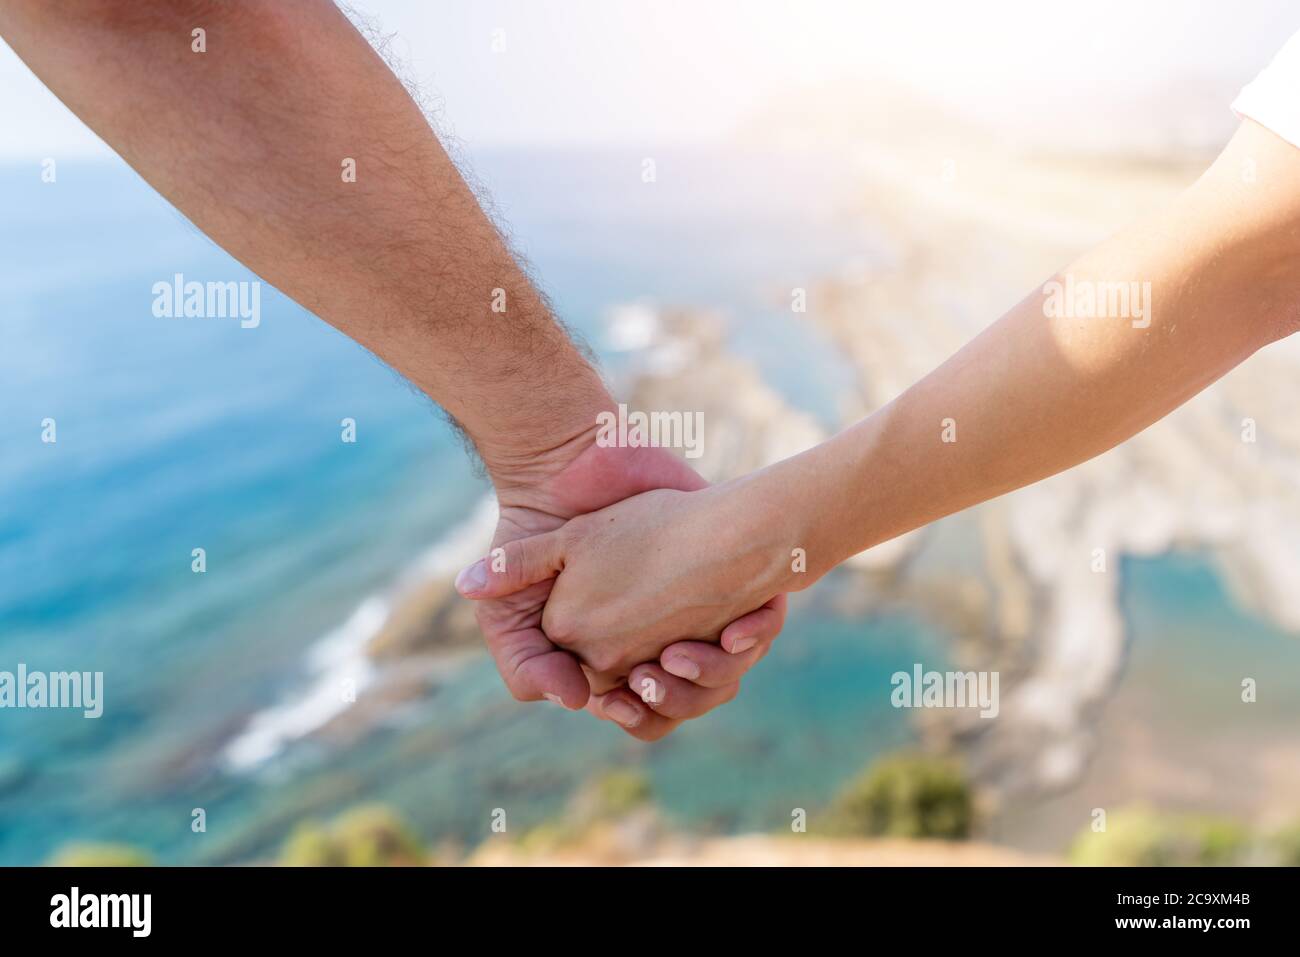 Deux mains se tiennent avec la lumière du soleil floue et la vue magnifique sur le paysage d'une falaise et de la mer. Photo de haute qualité Banque D'Images